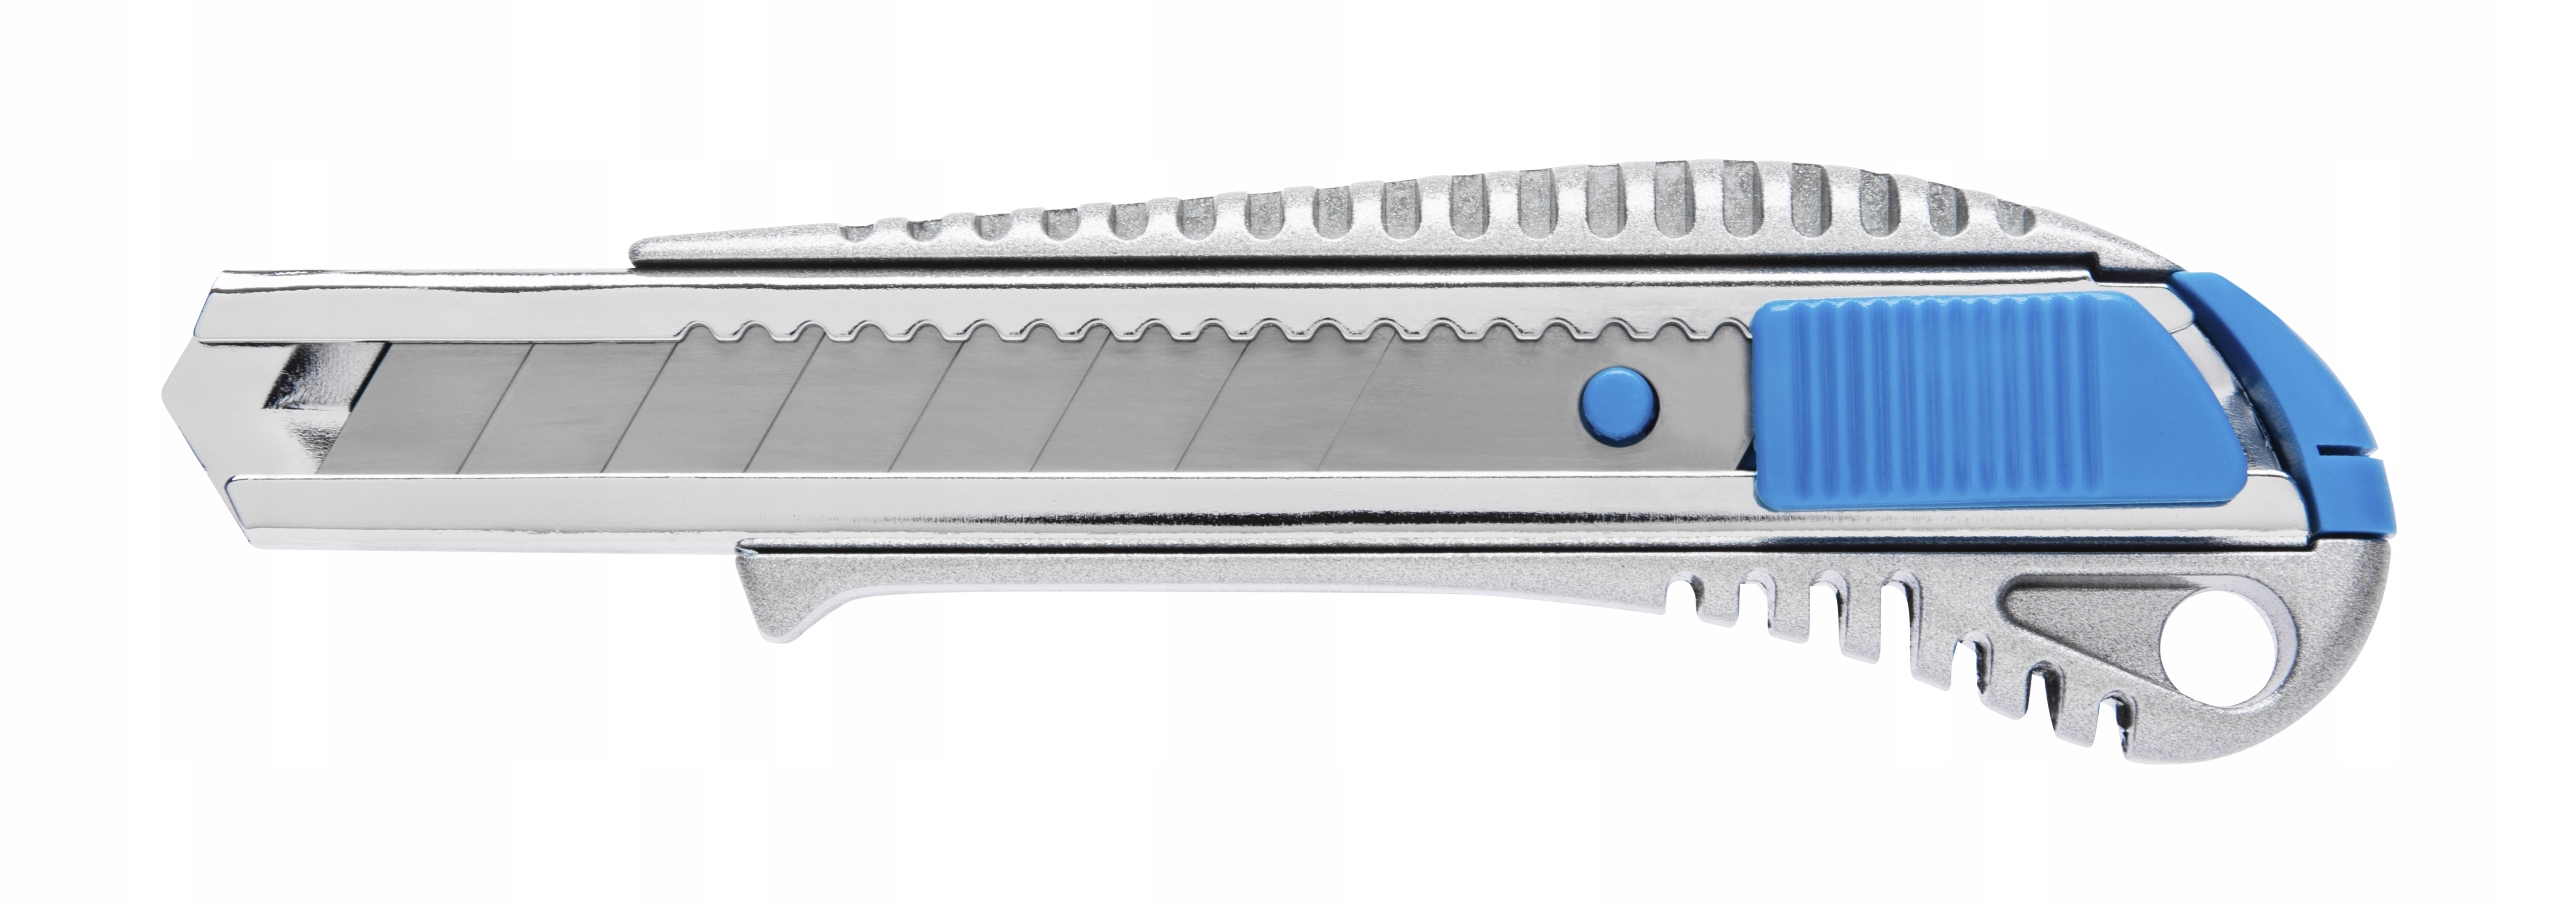 Нож 18 мм металлический. Hoegert нож ht4c639. Нож Hoegert Technik ht4c625. Нож с отламывающимися лезвиями 18 мм. Нож с металлическим корпусом Yoko, 18 мм.